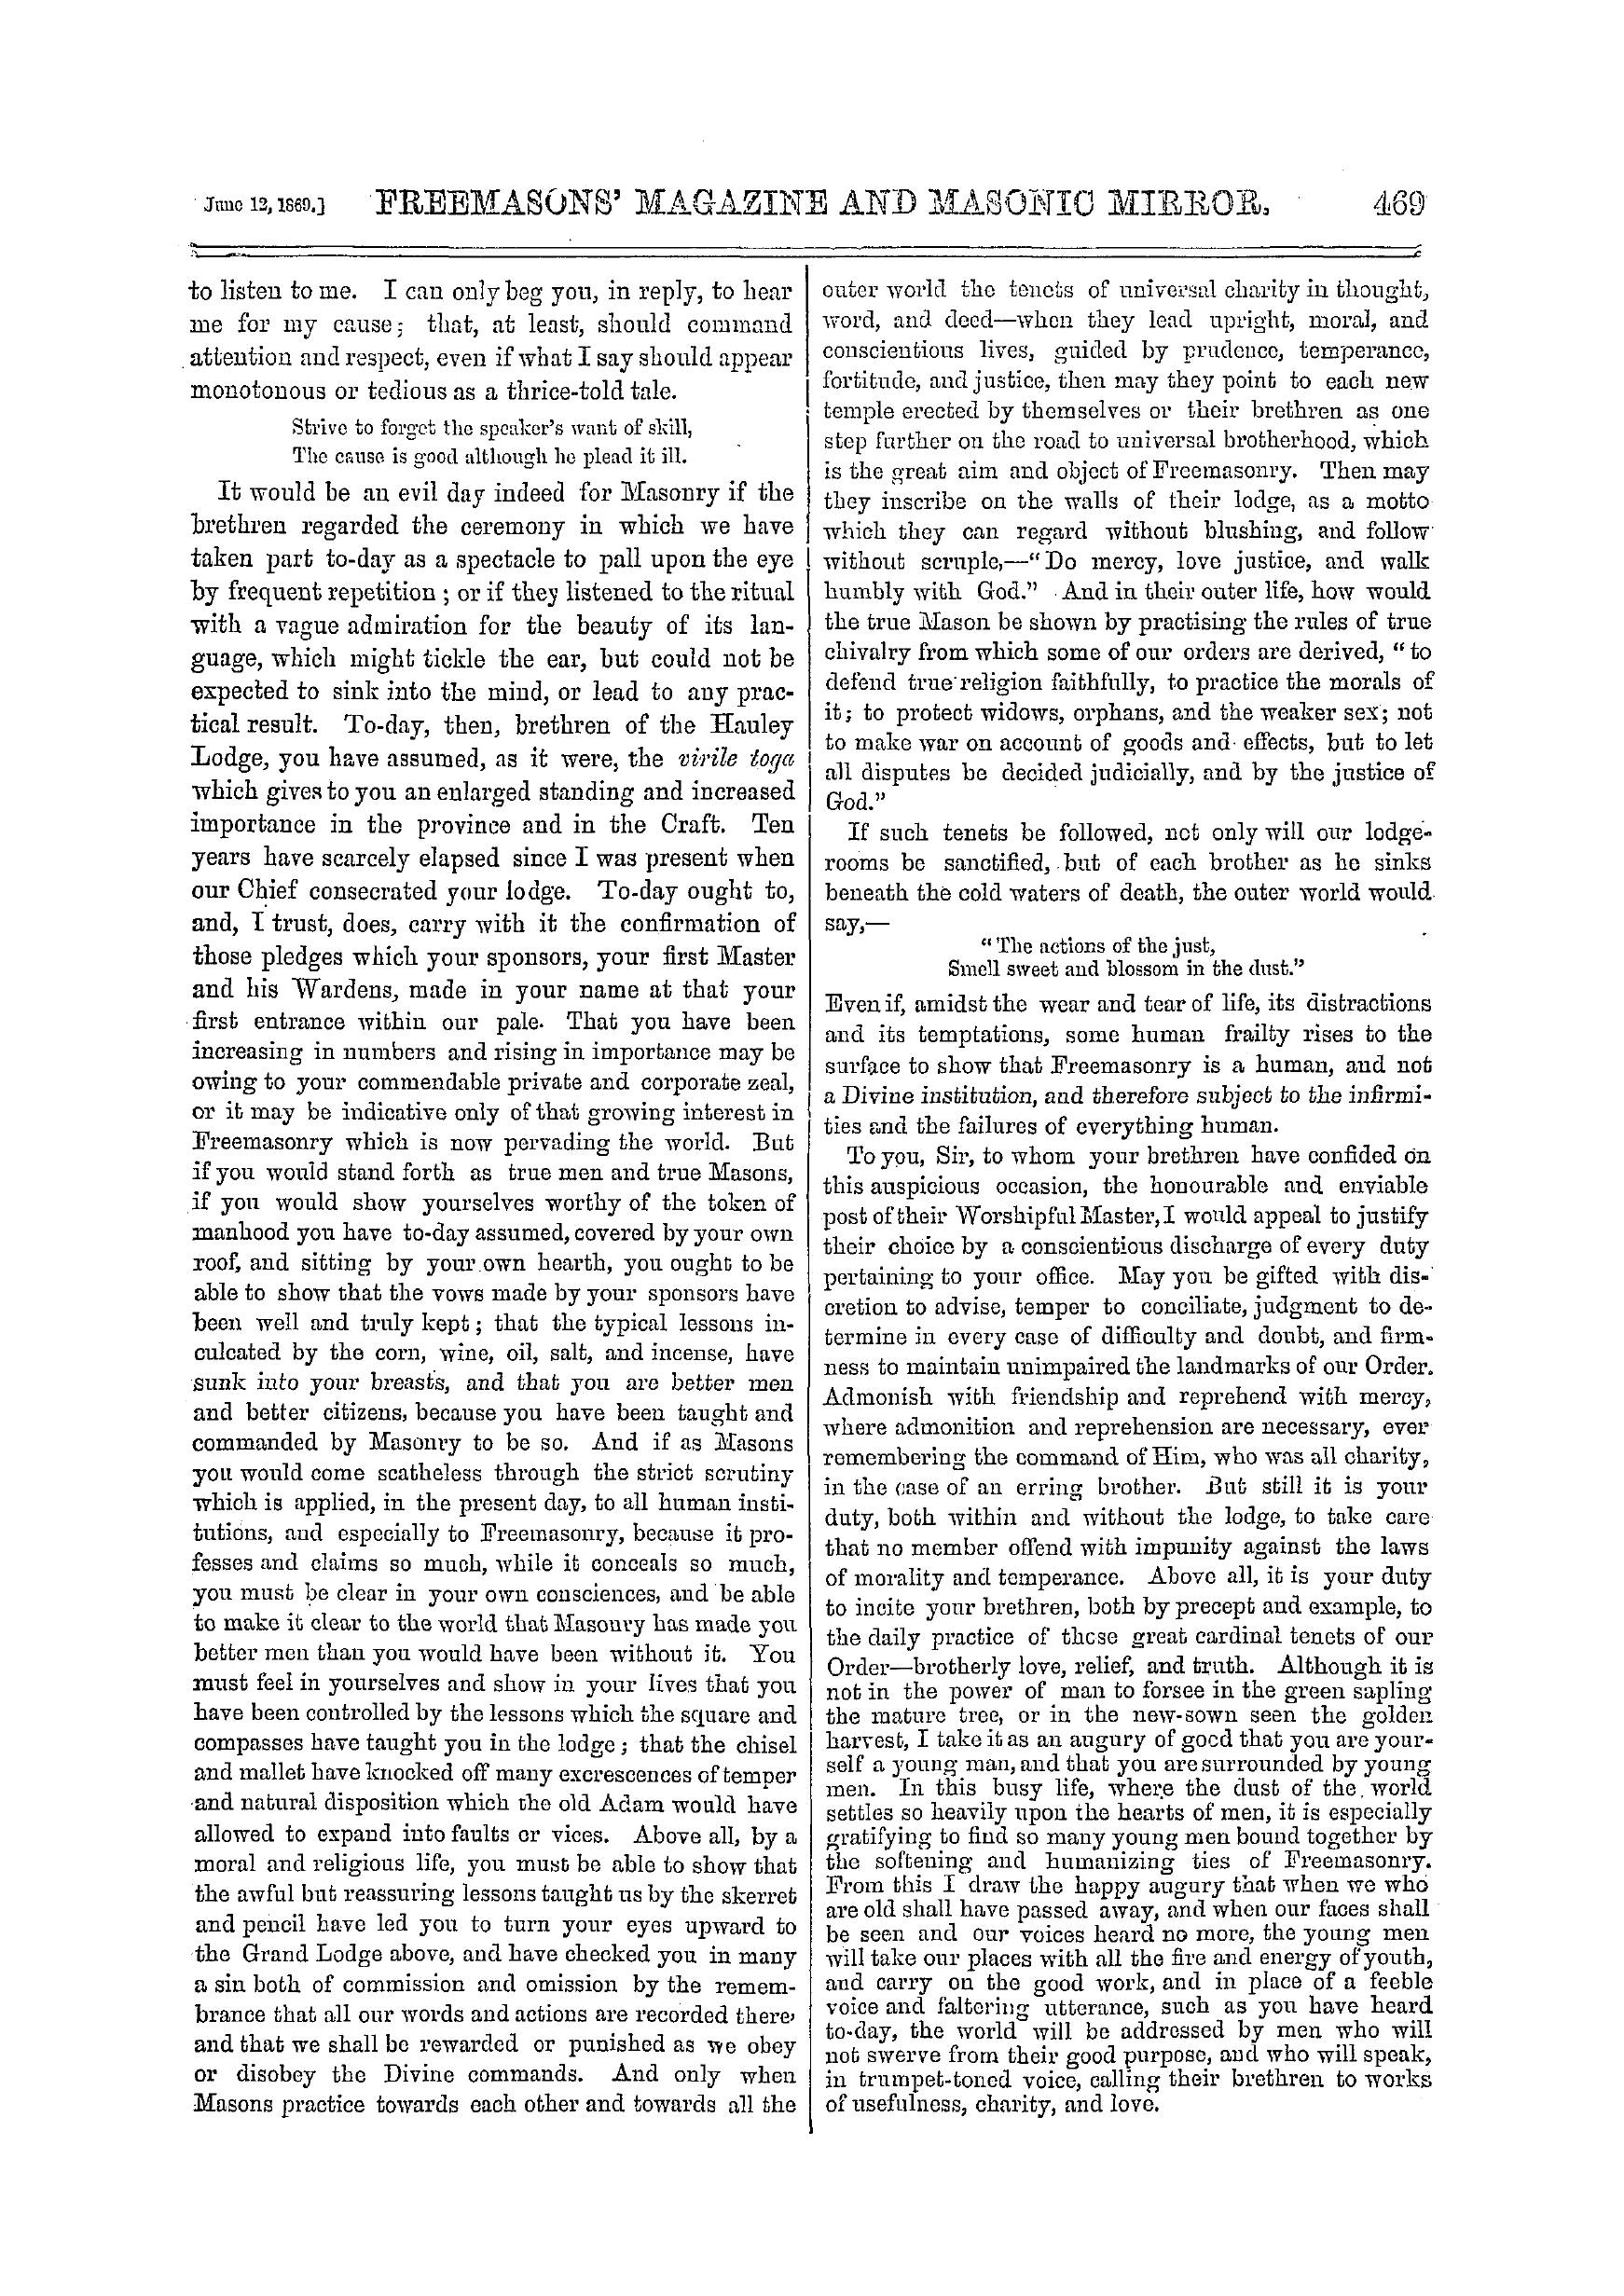 The Freemasons' Monthly Magazine: 1869-06-12: 9